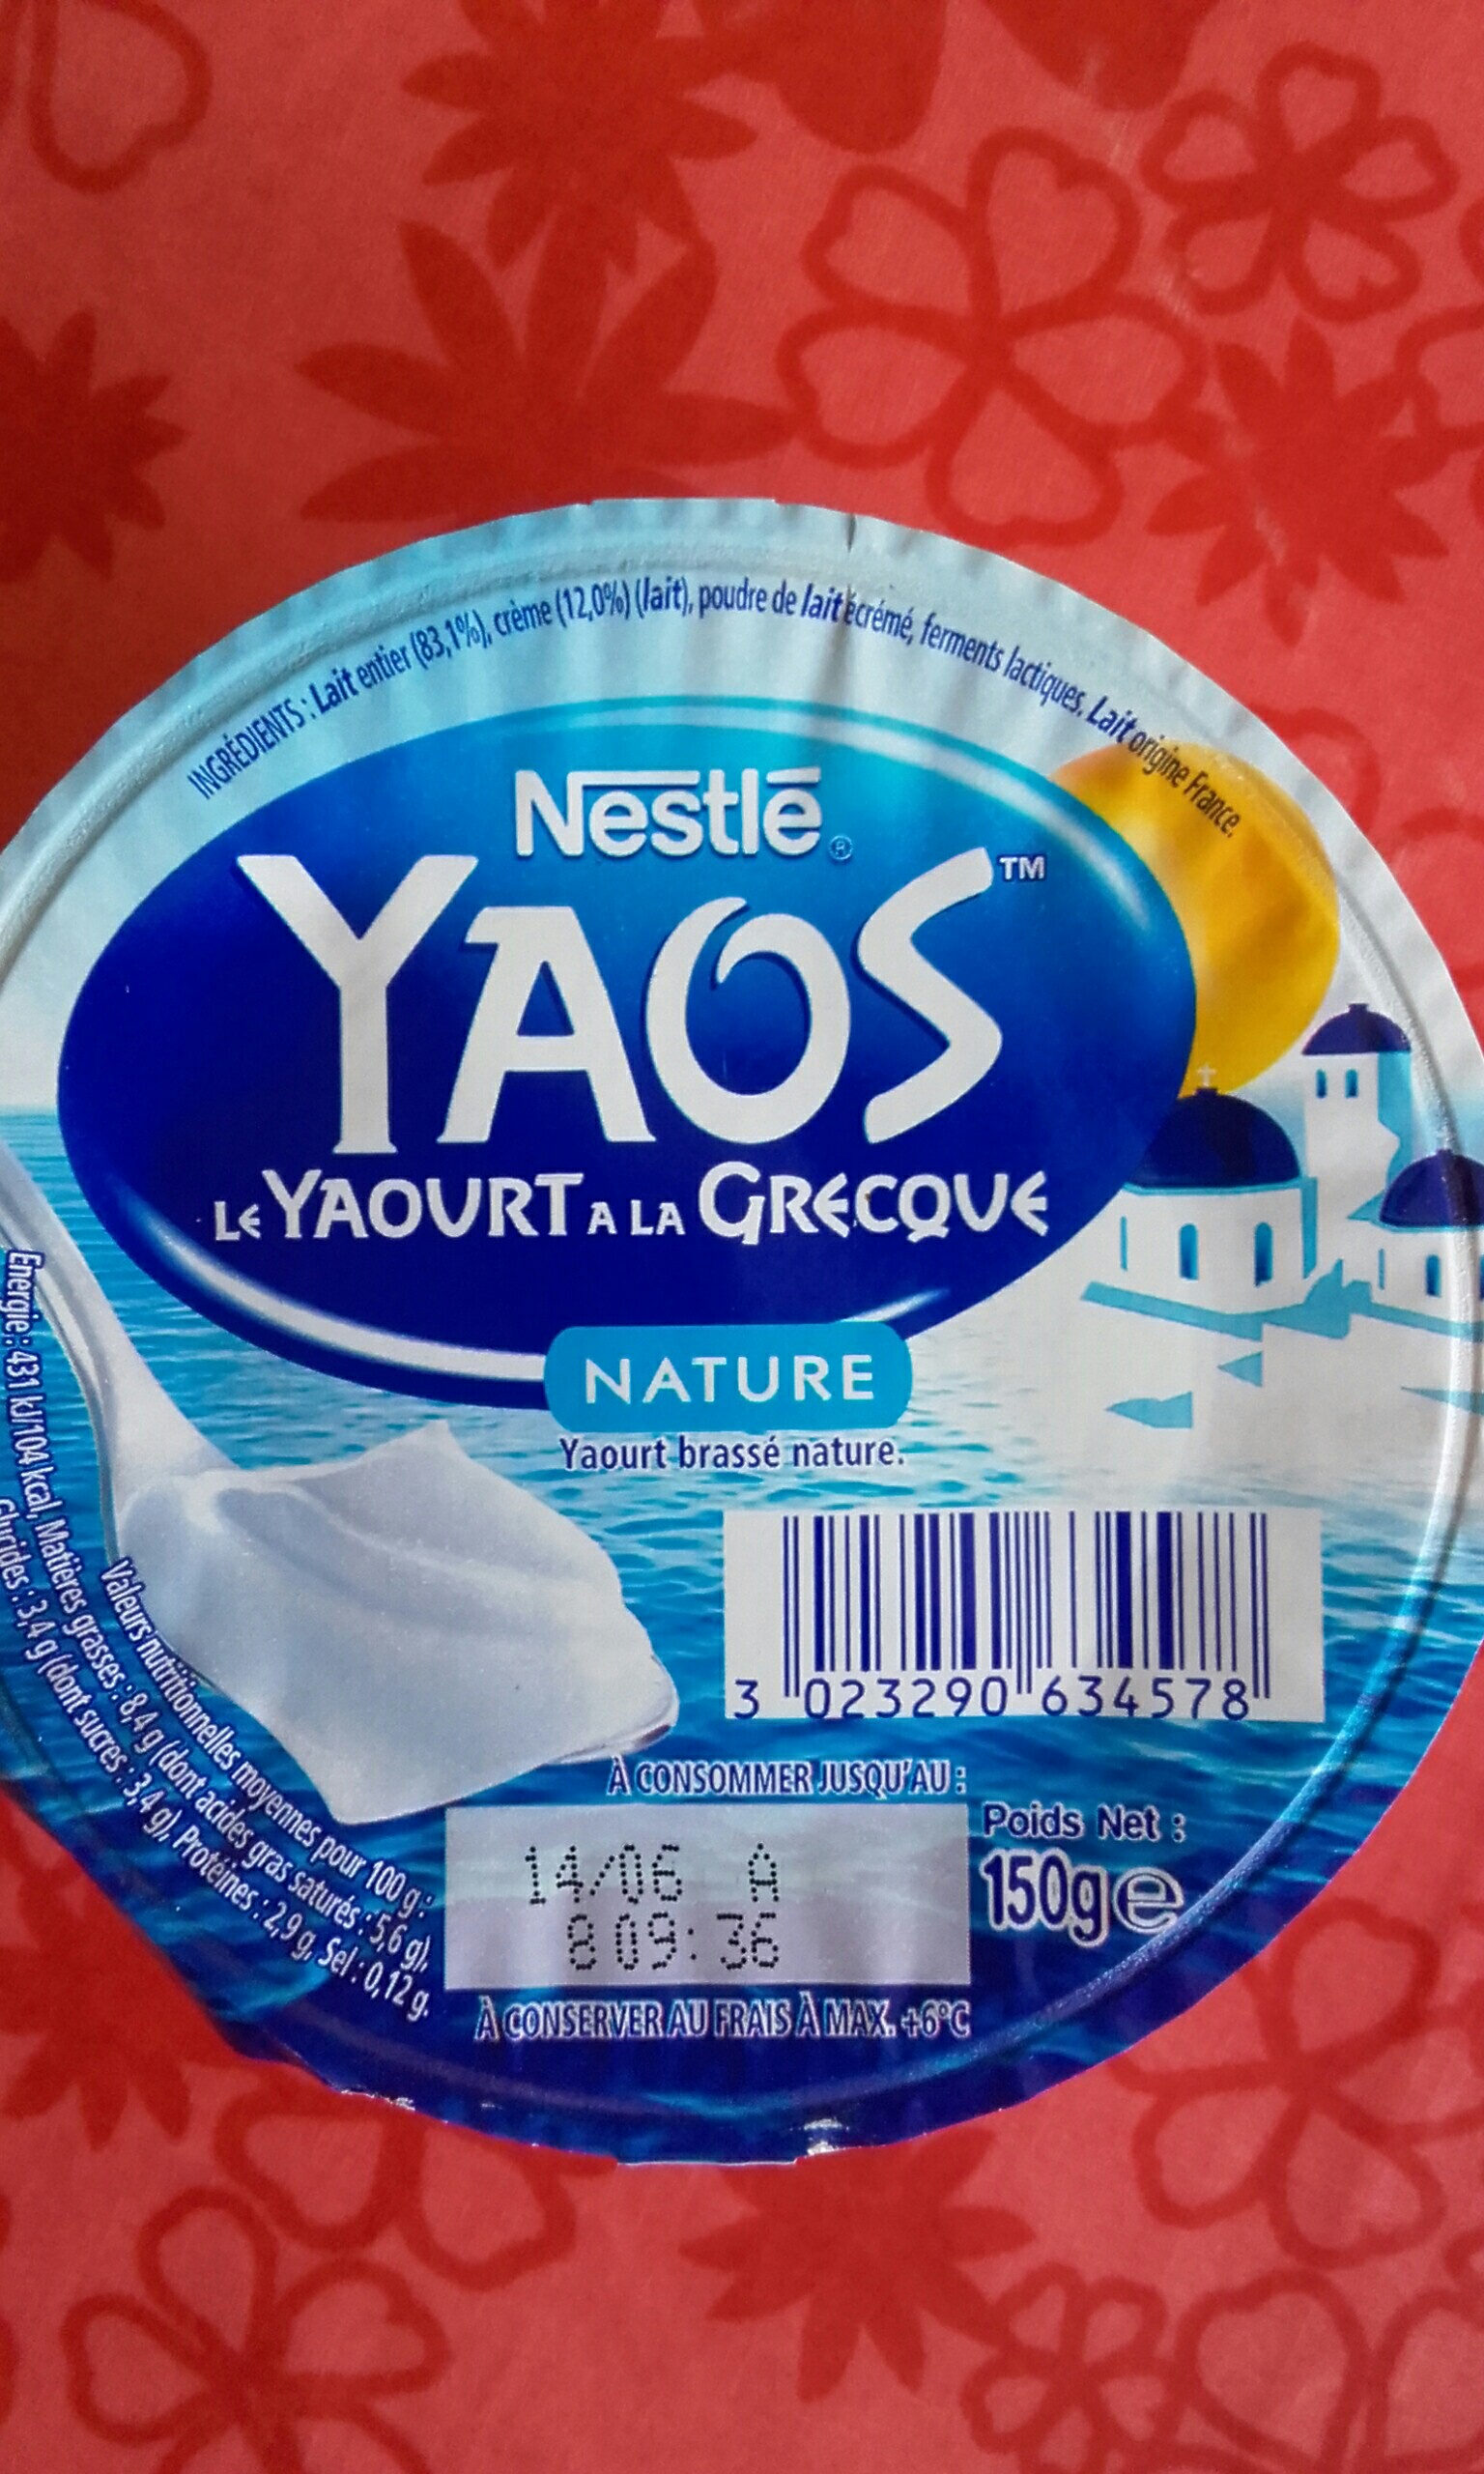 Yaos le yaourt à la Grecque - Tableau nutritionnel - fr